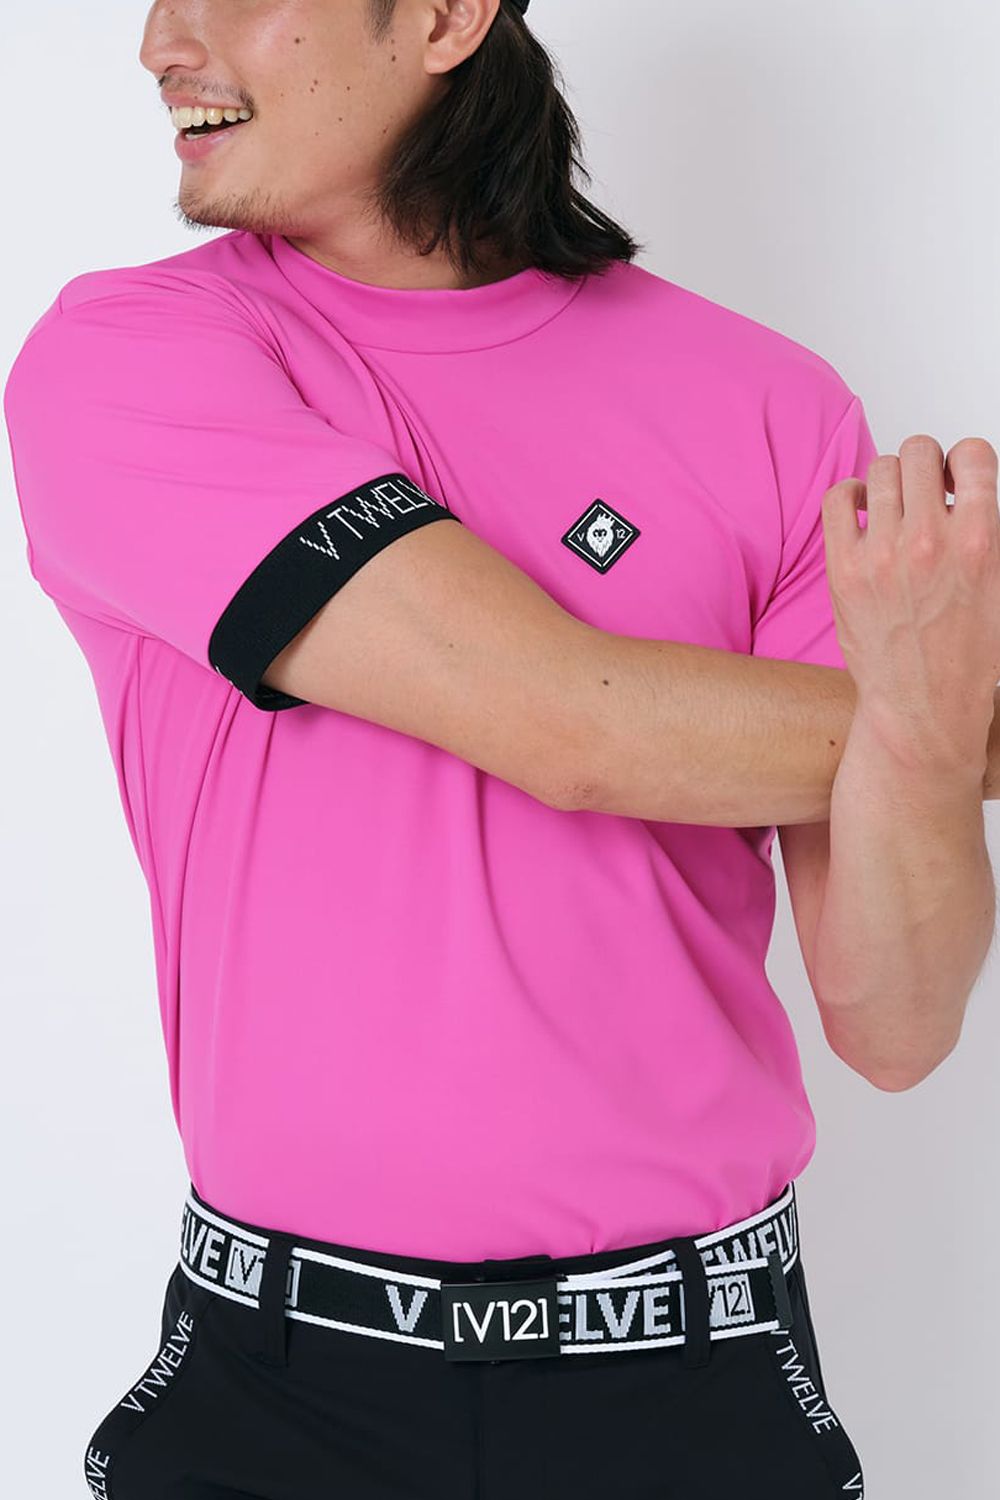 最安値特価【お値下げ】モックネックTシャツピンク メンズウェア